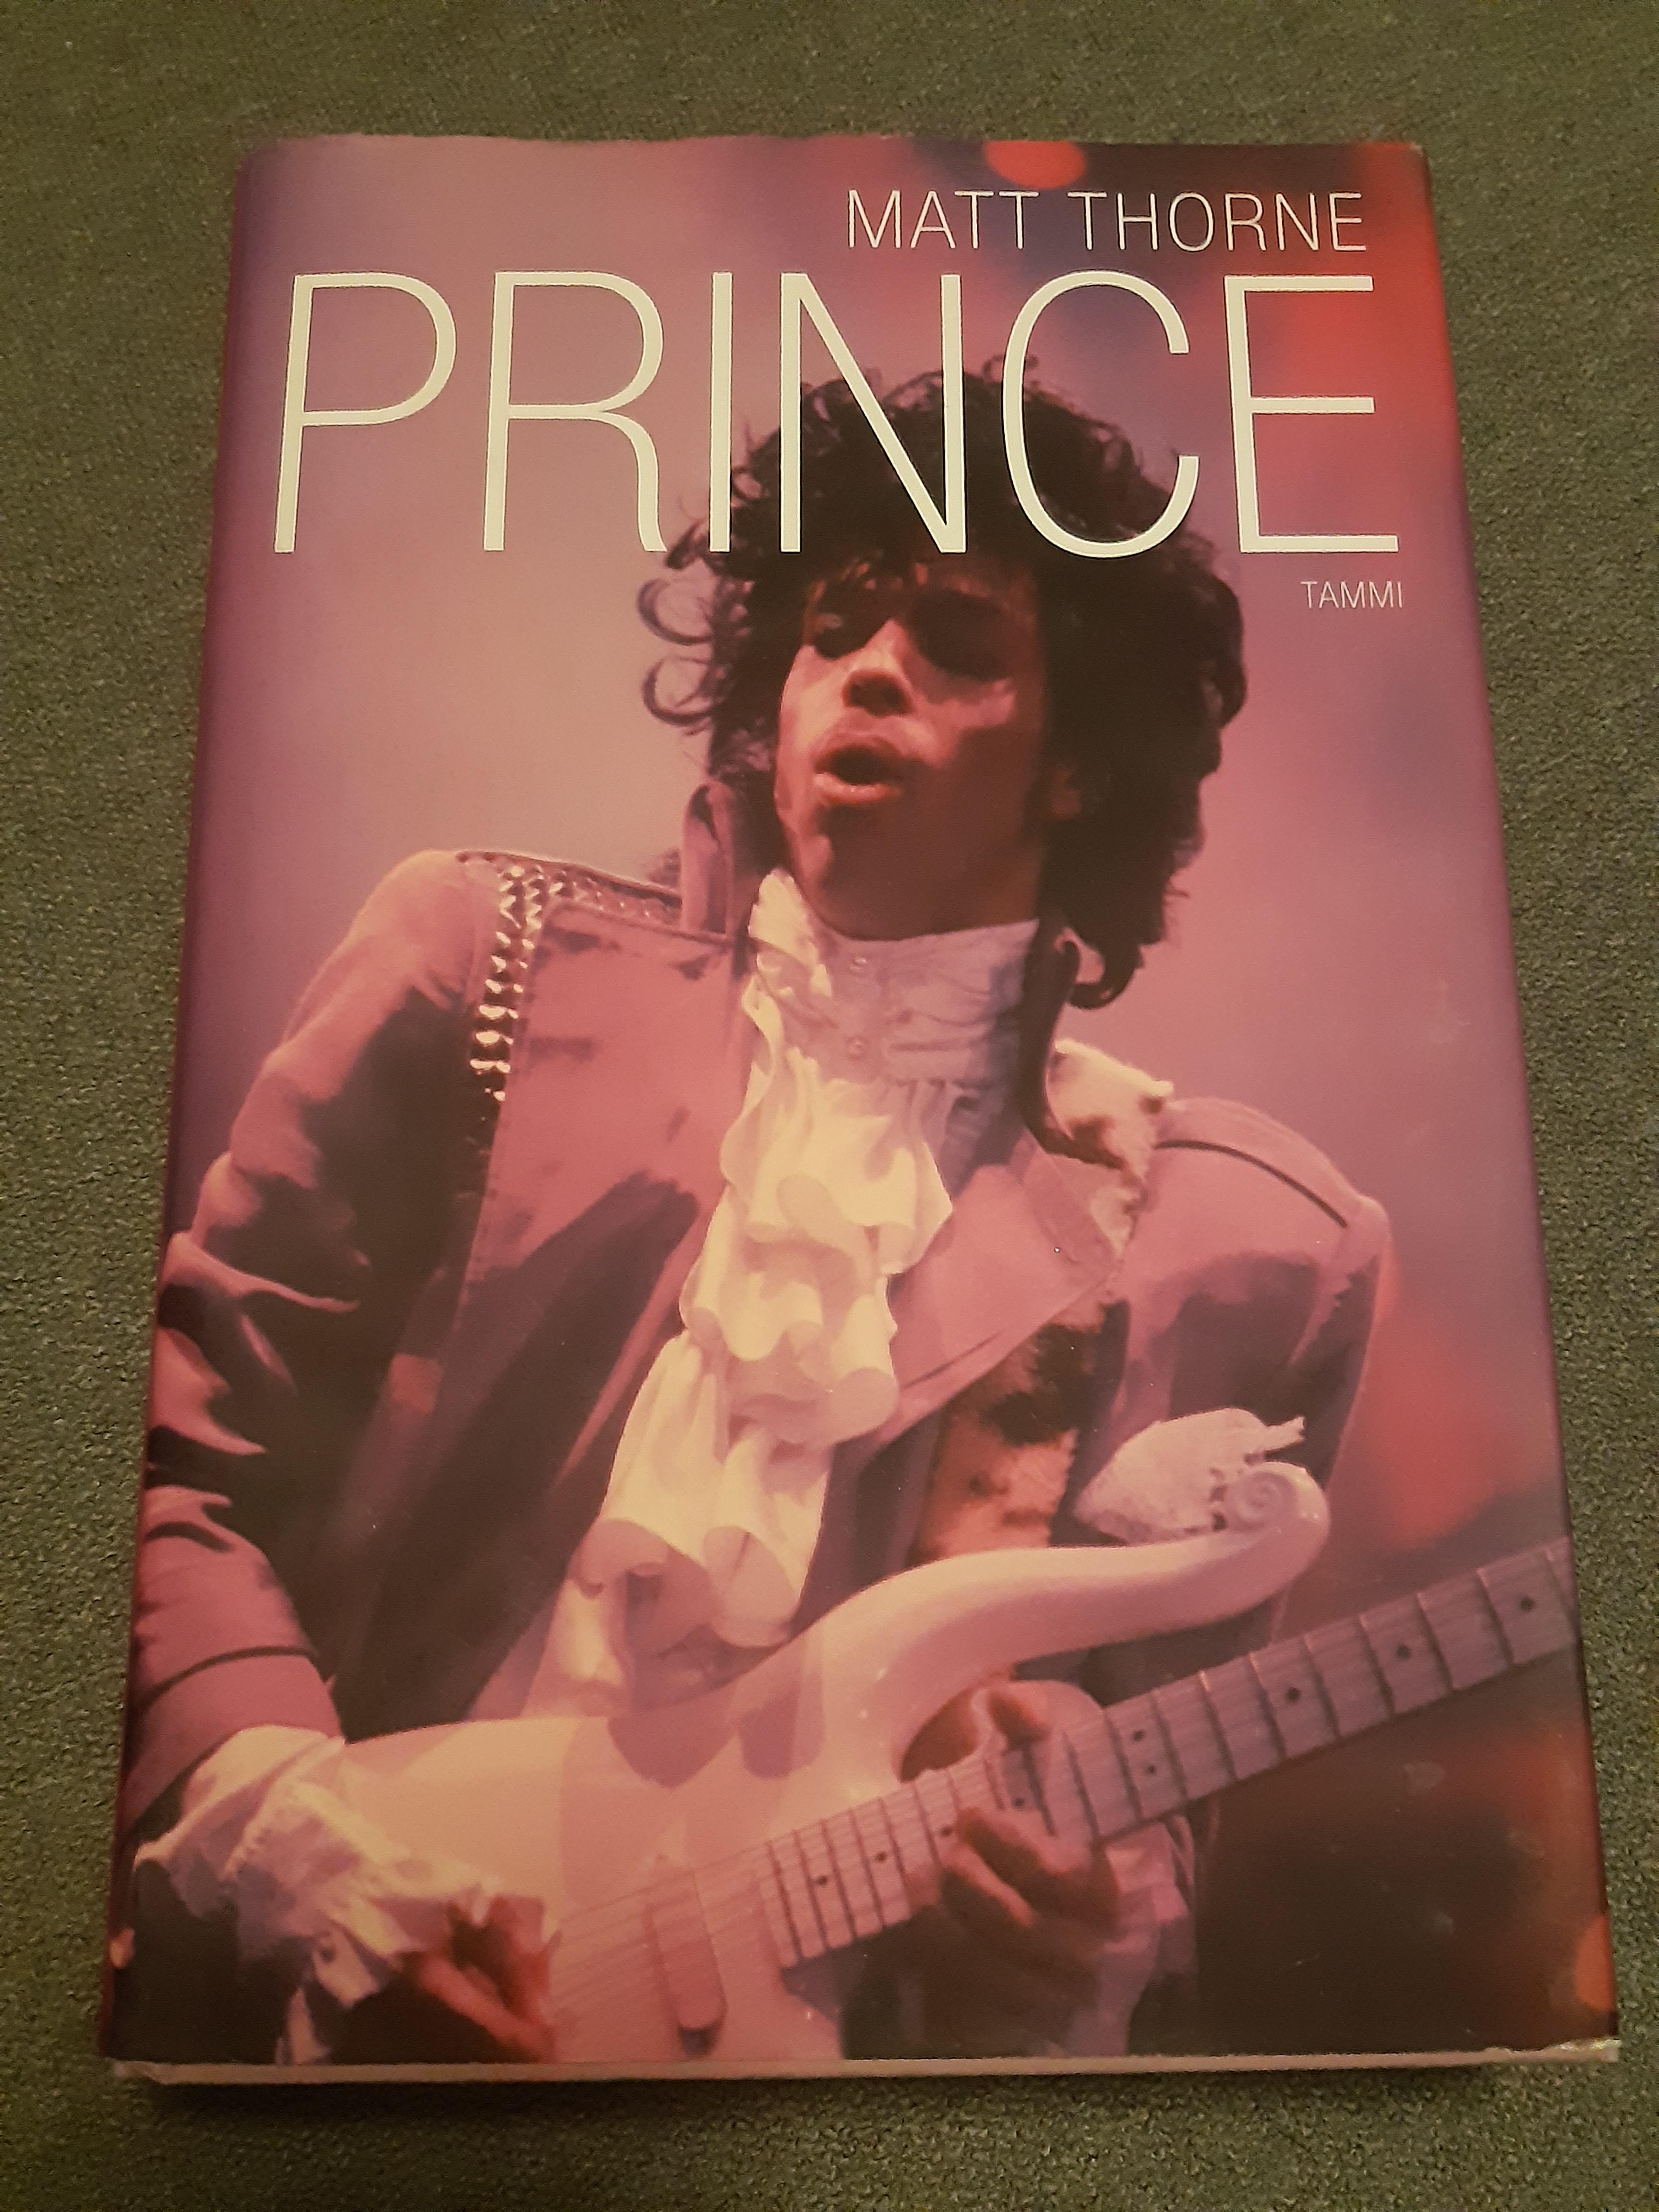 Prince - Matt Thorne - Kirja (käytetty)